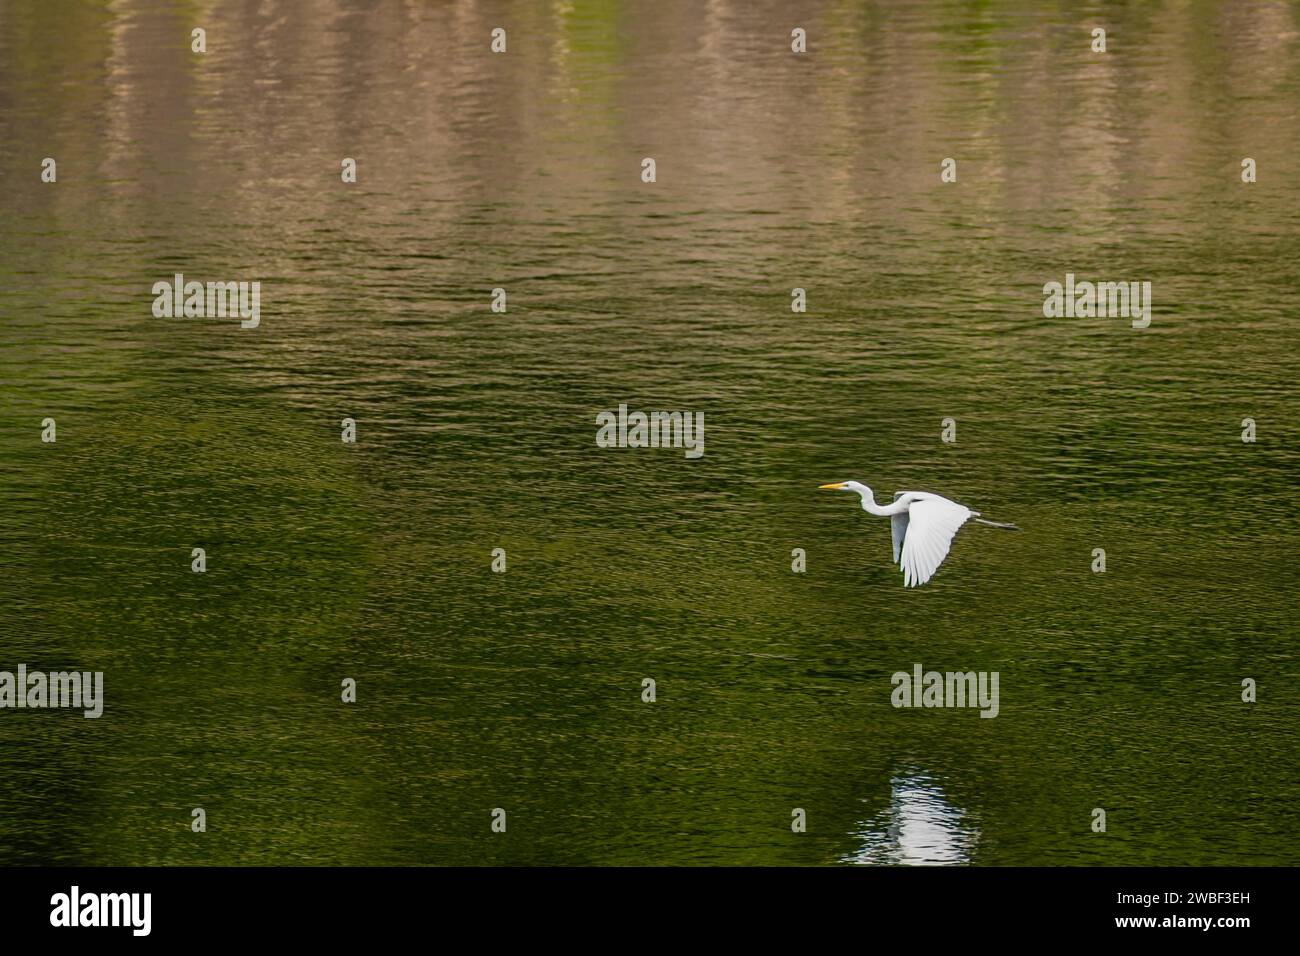 Weißer Reiher, der über den Fluss fliegt, mit grünem Farbstich, der durch Bäume am Ufer verursacht wird Stockfoto